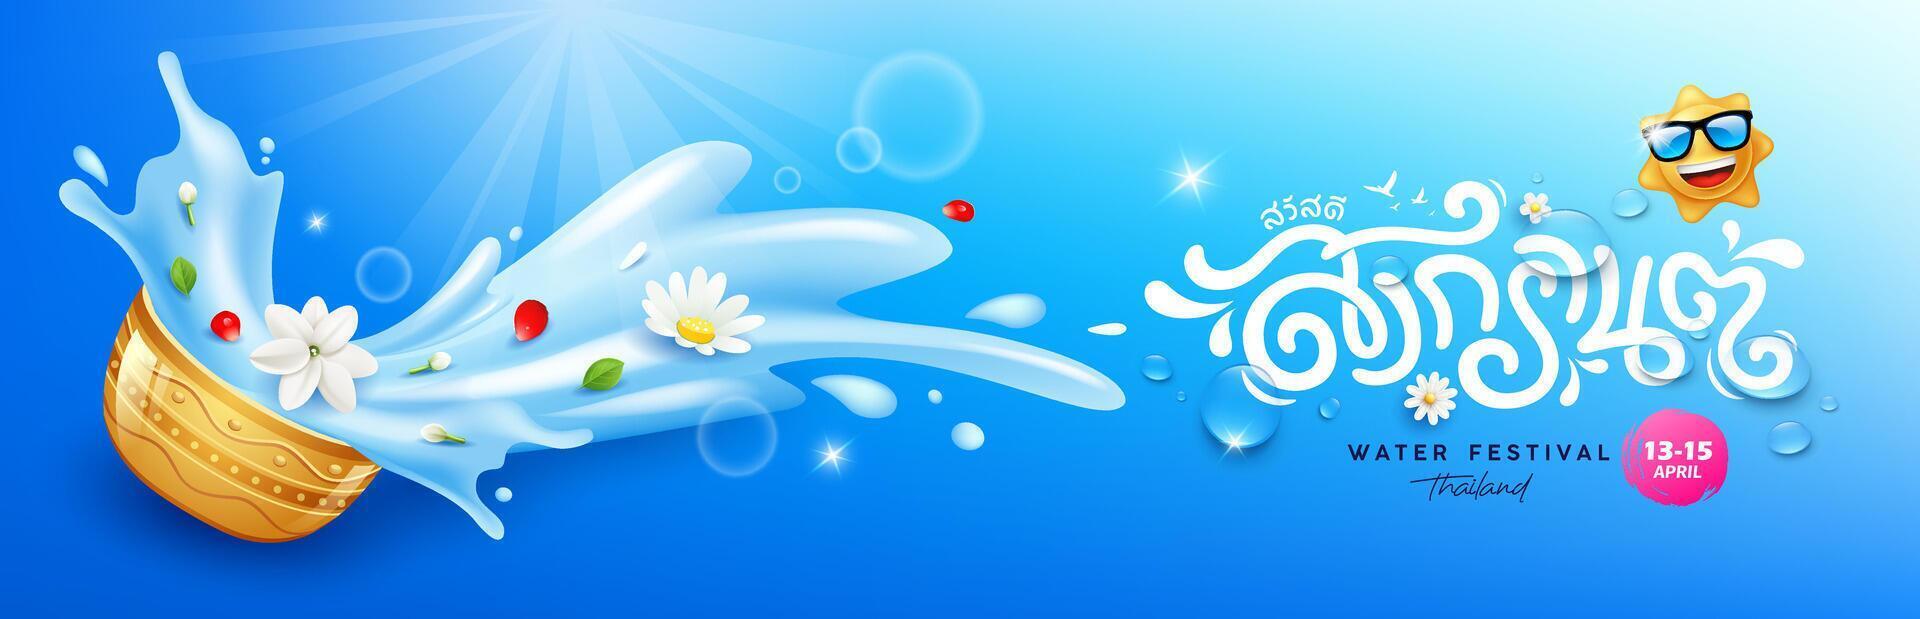 songkran water festival Thailand, bloemen in een water kom water spatten, tekens vertaling songkran en Hallo, banier ontwerp Aan blauw achtergrond, eps 10 vector illustratie